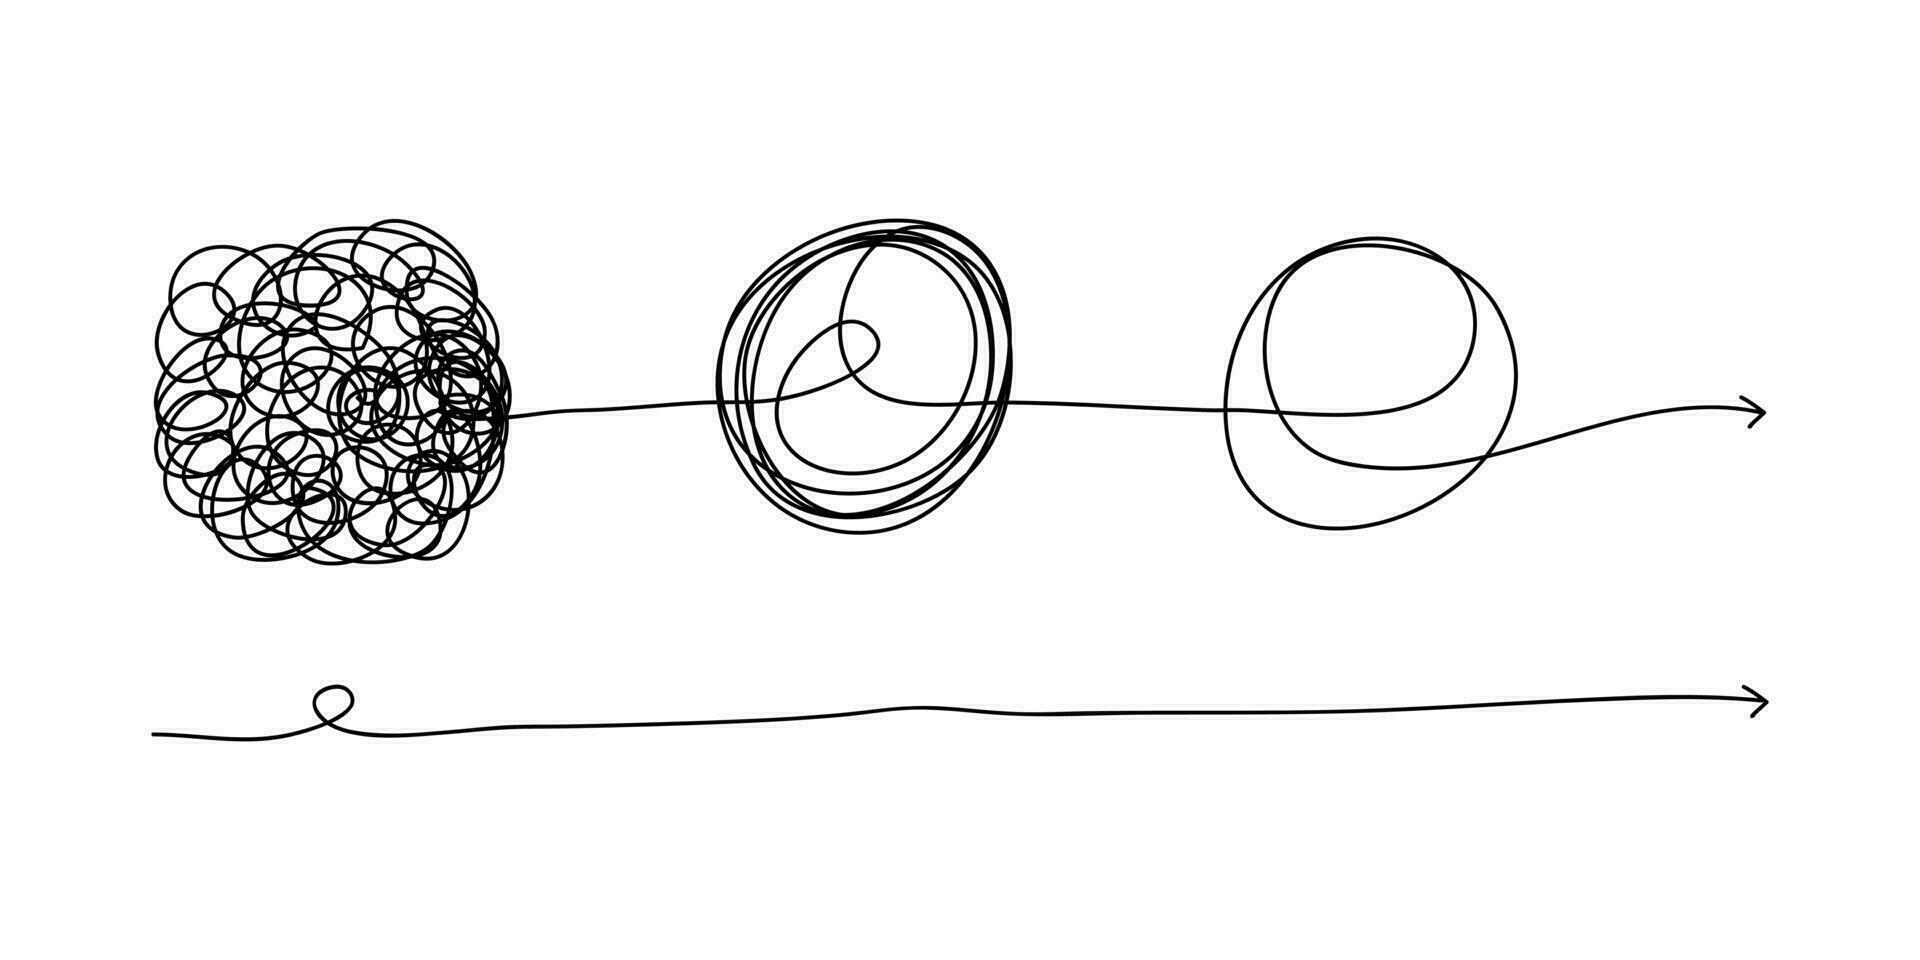 klottra linje doodles. de begrepp av övergång från komplicerad till enkel, förenkla de komplex, förvirring klarhet eller väg. isolerat på vit bakgrund. vektor illustrationer